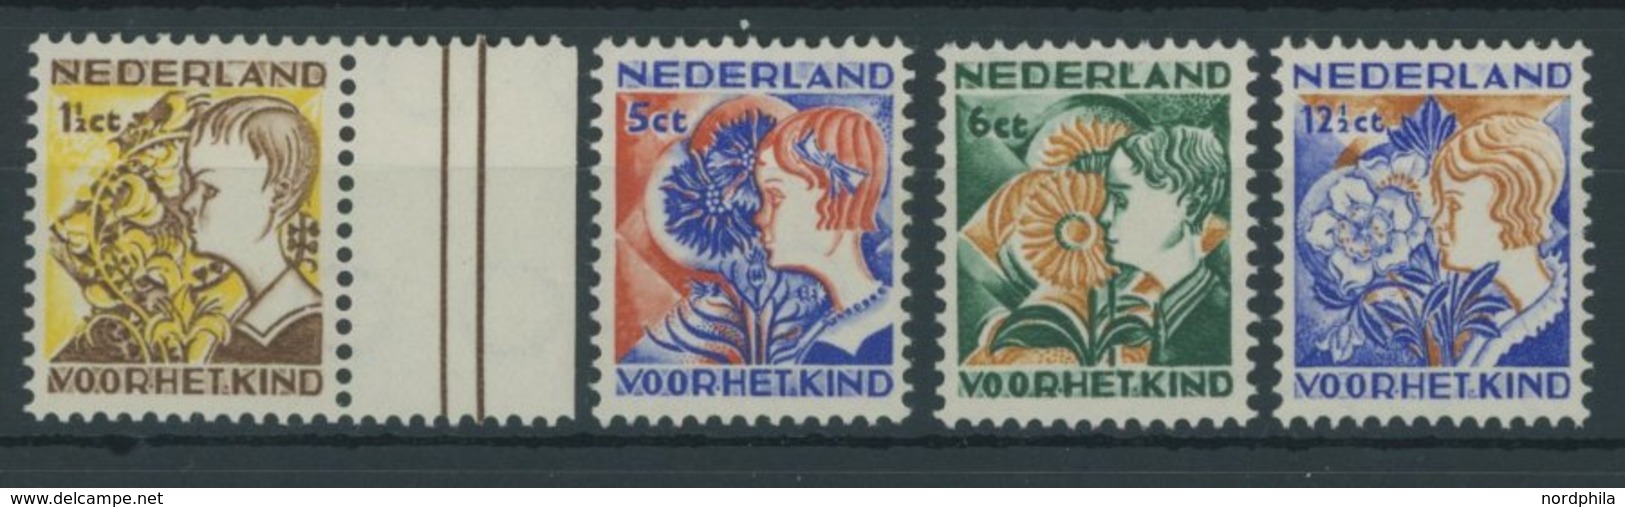 NIEDERLANDE 253-56A **, 1923, Voor Het Kind, Gezähnt K 121/2, Postfrischer Prachtsatz, Mi. 110.- - Pays-Bas